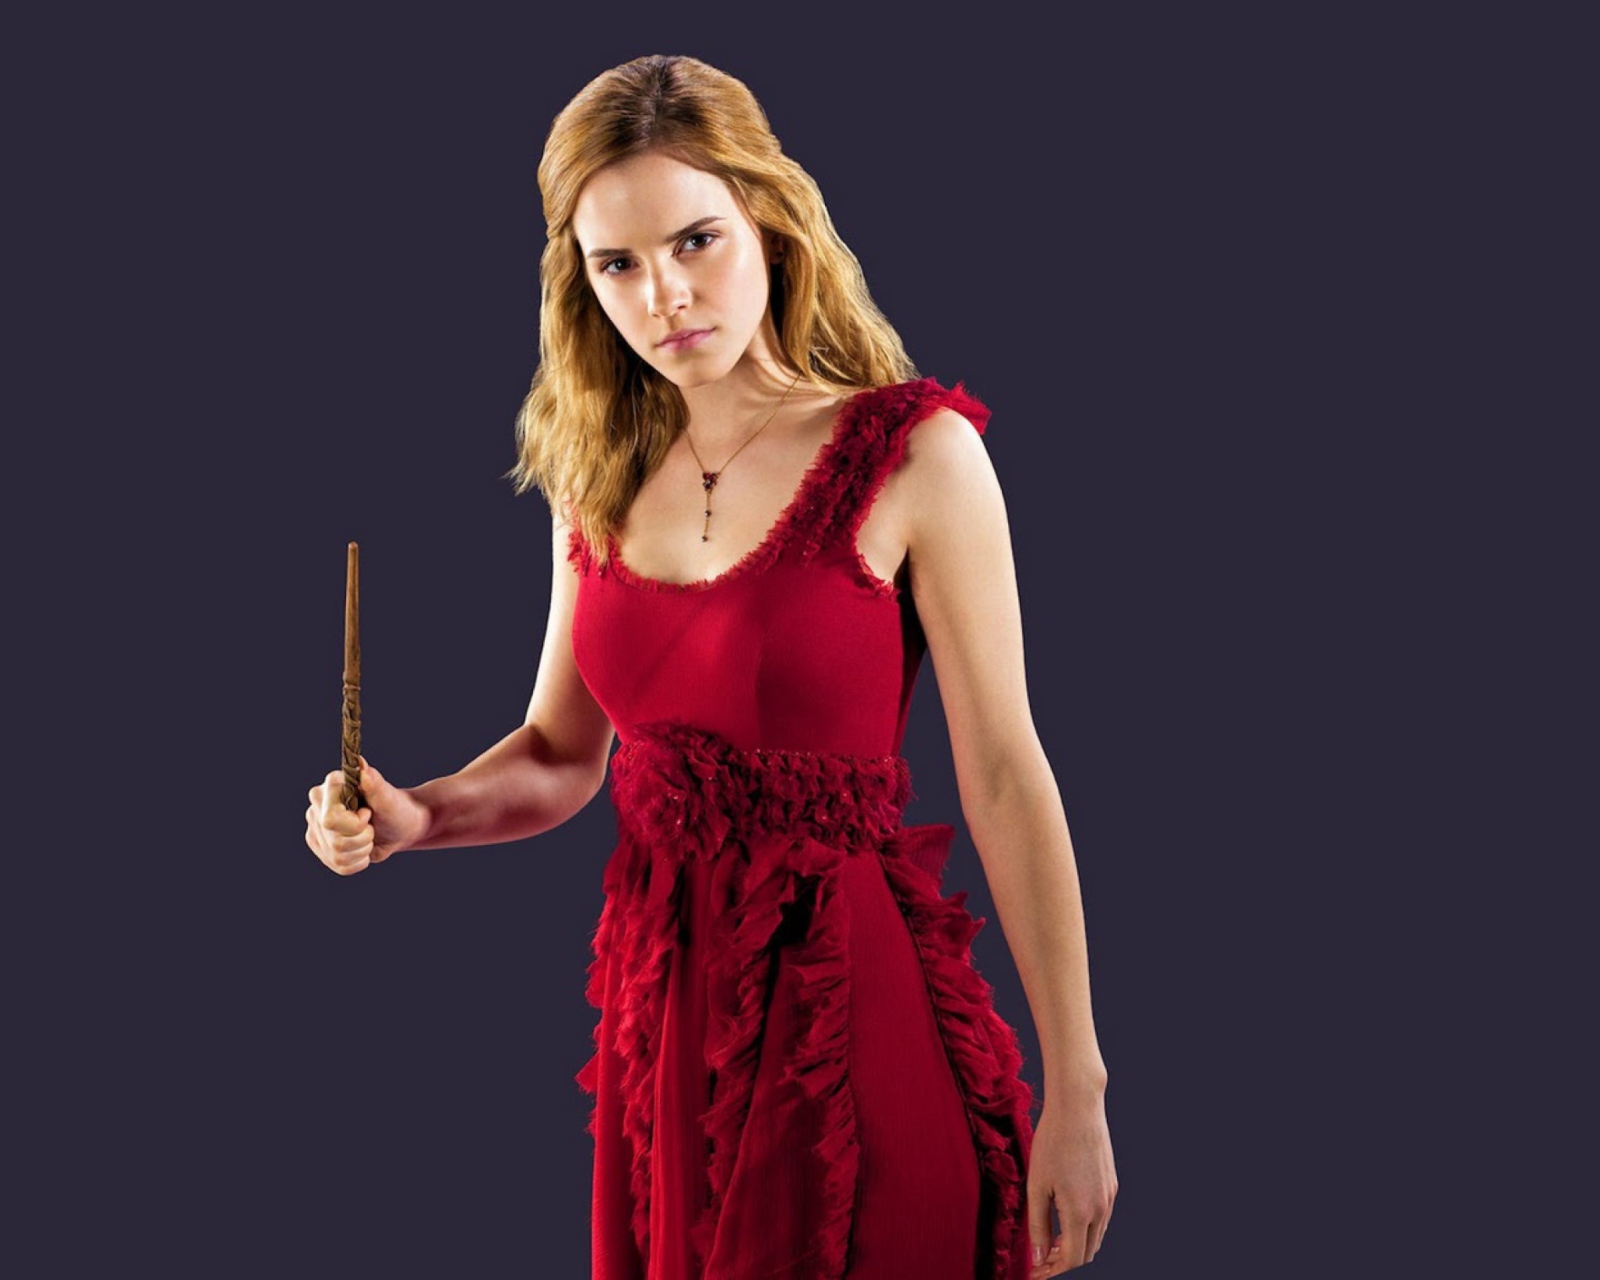 Emma Watson In Red Dress wallpaper 1600x1280